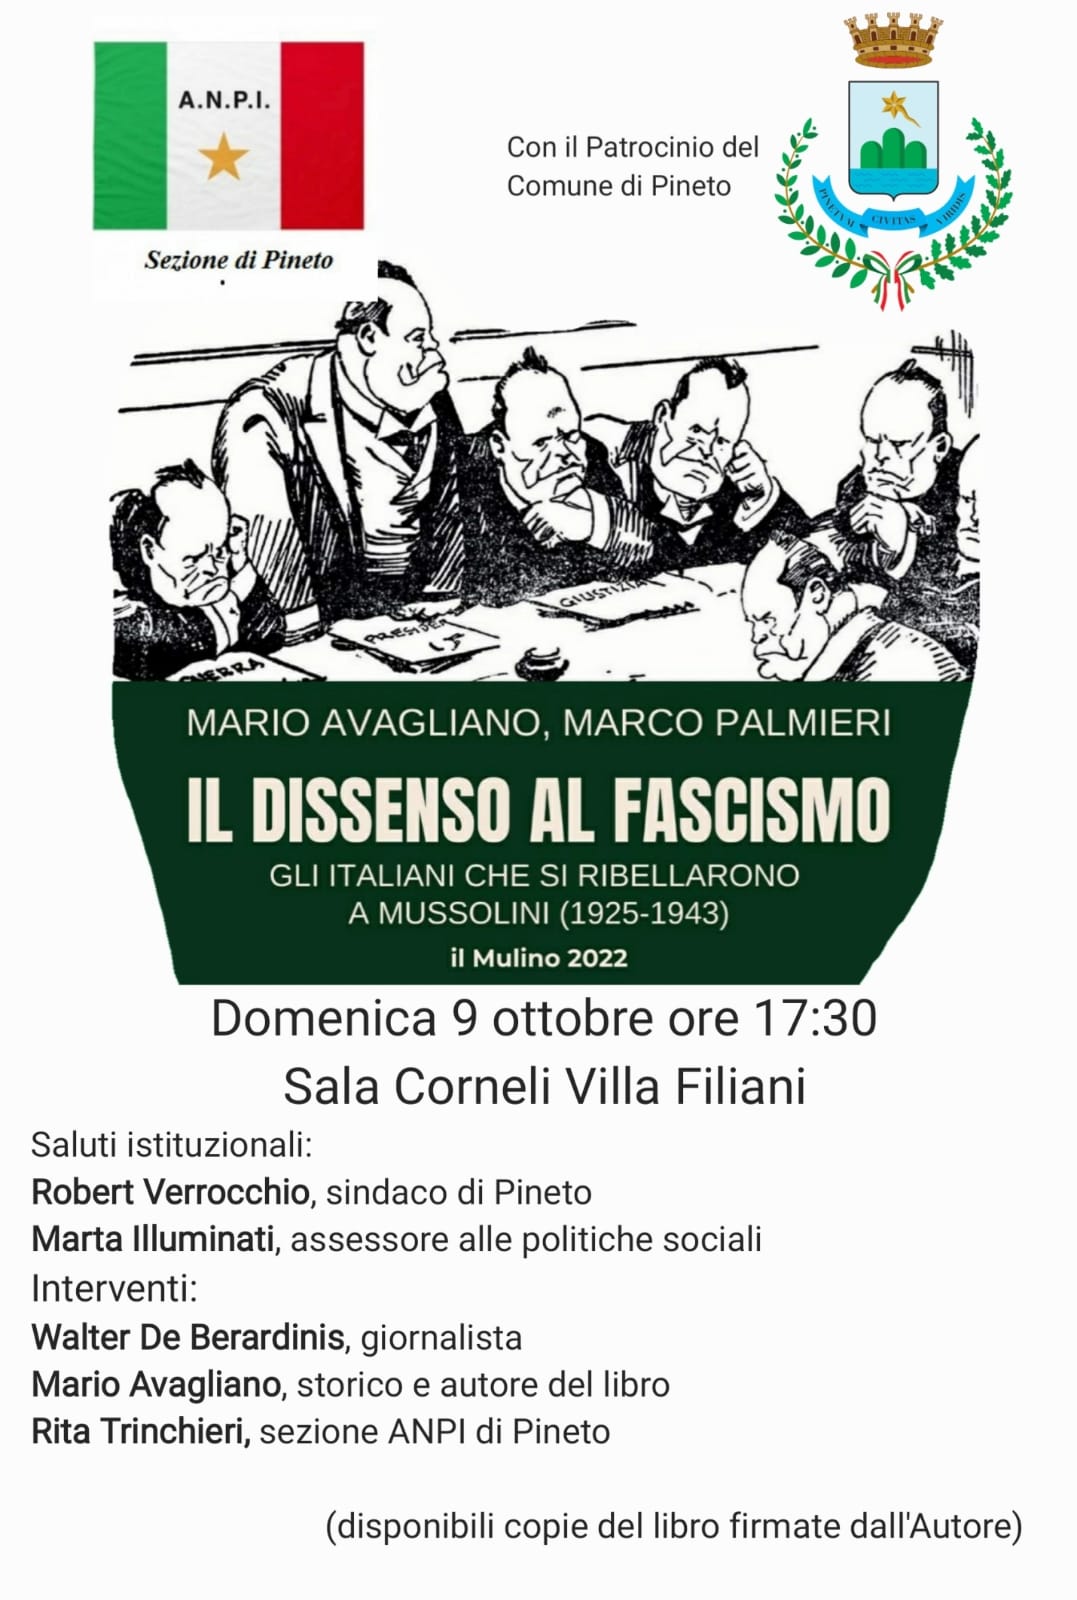 Libri&Editoria. A Pineto presentazione del libro di Mario Avagliano  “Dissenso al fascismo”